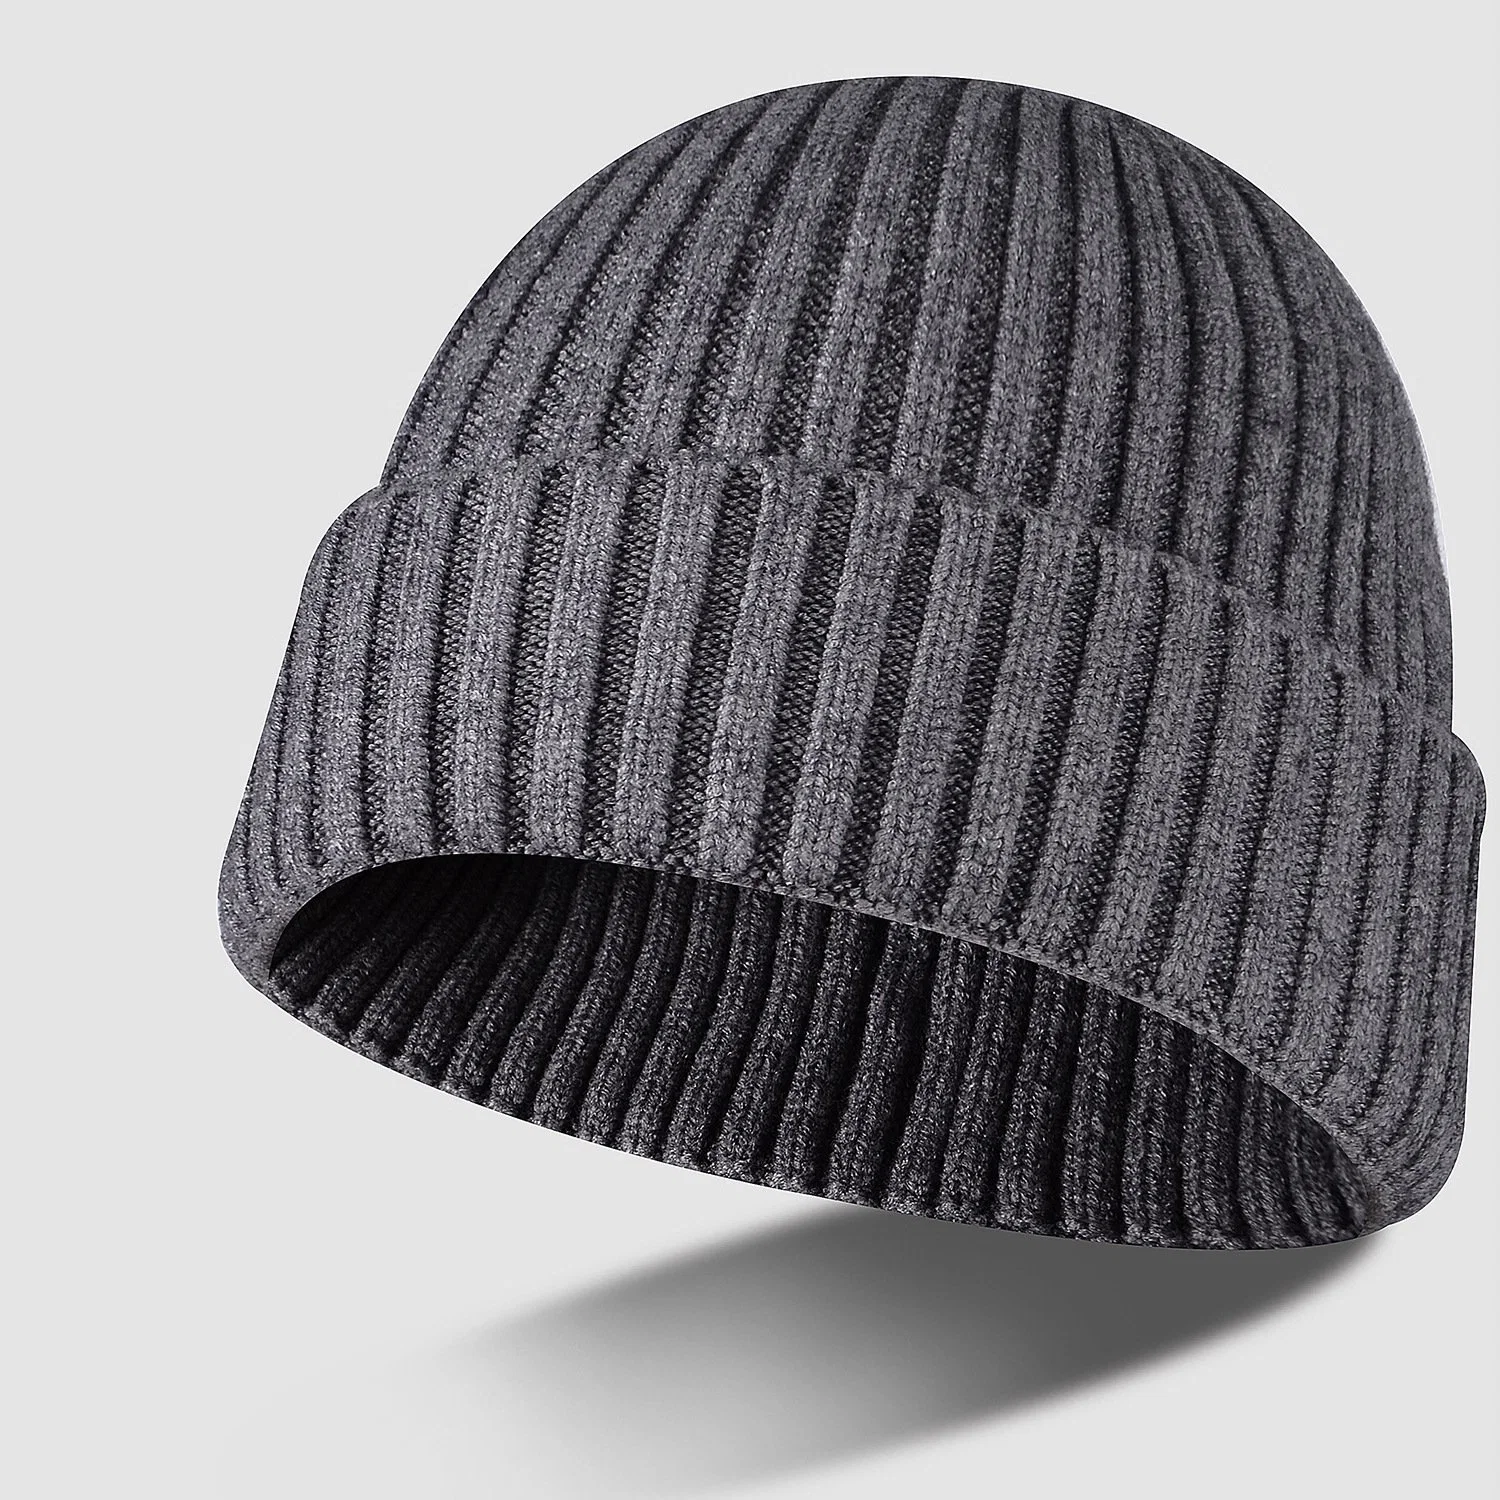 Шапка для вязания с головным убором оптом для хранения теплой зимней одежды Шапка для шапки из каски с гладкой крашенкой